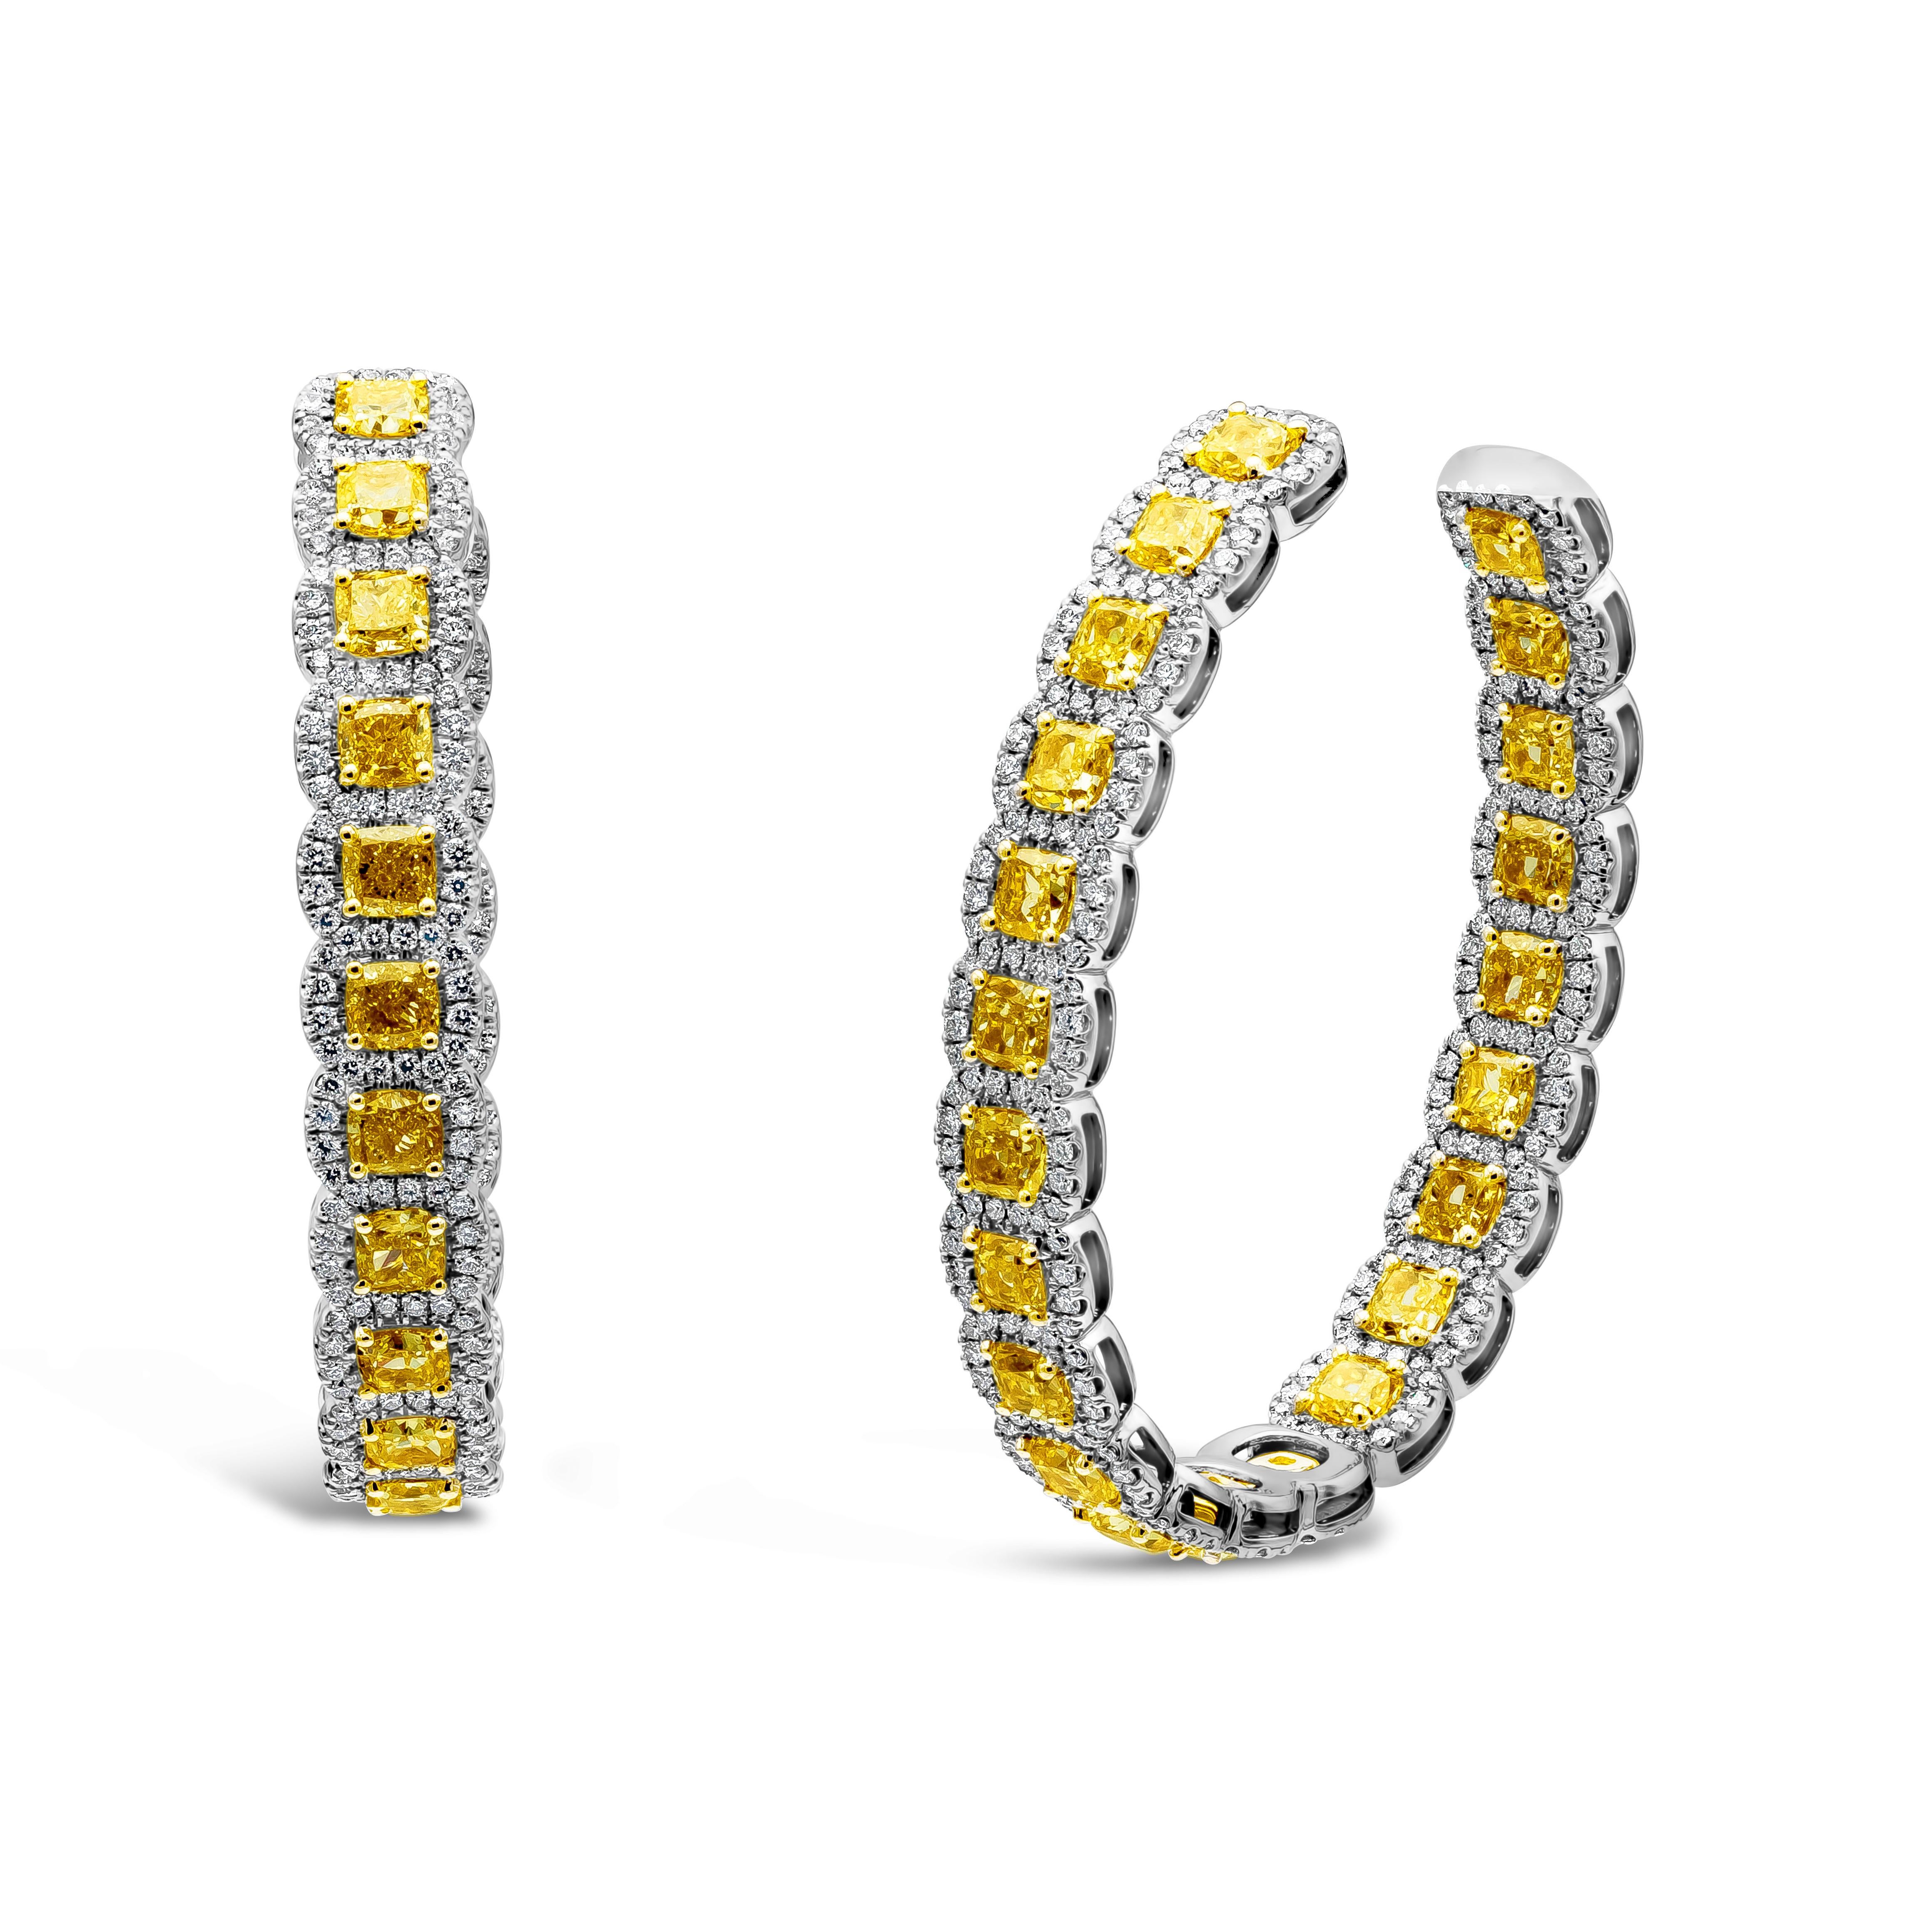 Ein einzigartiger und modisch wunderschöner gelber Diamant im Radiant-Schliff mit einem Gewicht von 15,28 Karat, umgeben von strahlend weißen Diamanten mit einem Gewicht von 3,69 Karat. Diamanten sind F Farbe und VS/SI in Klarheit. Gefasst in